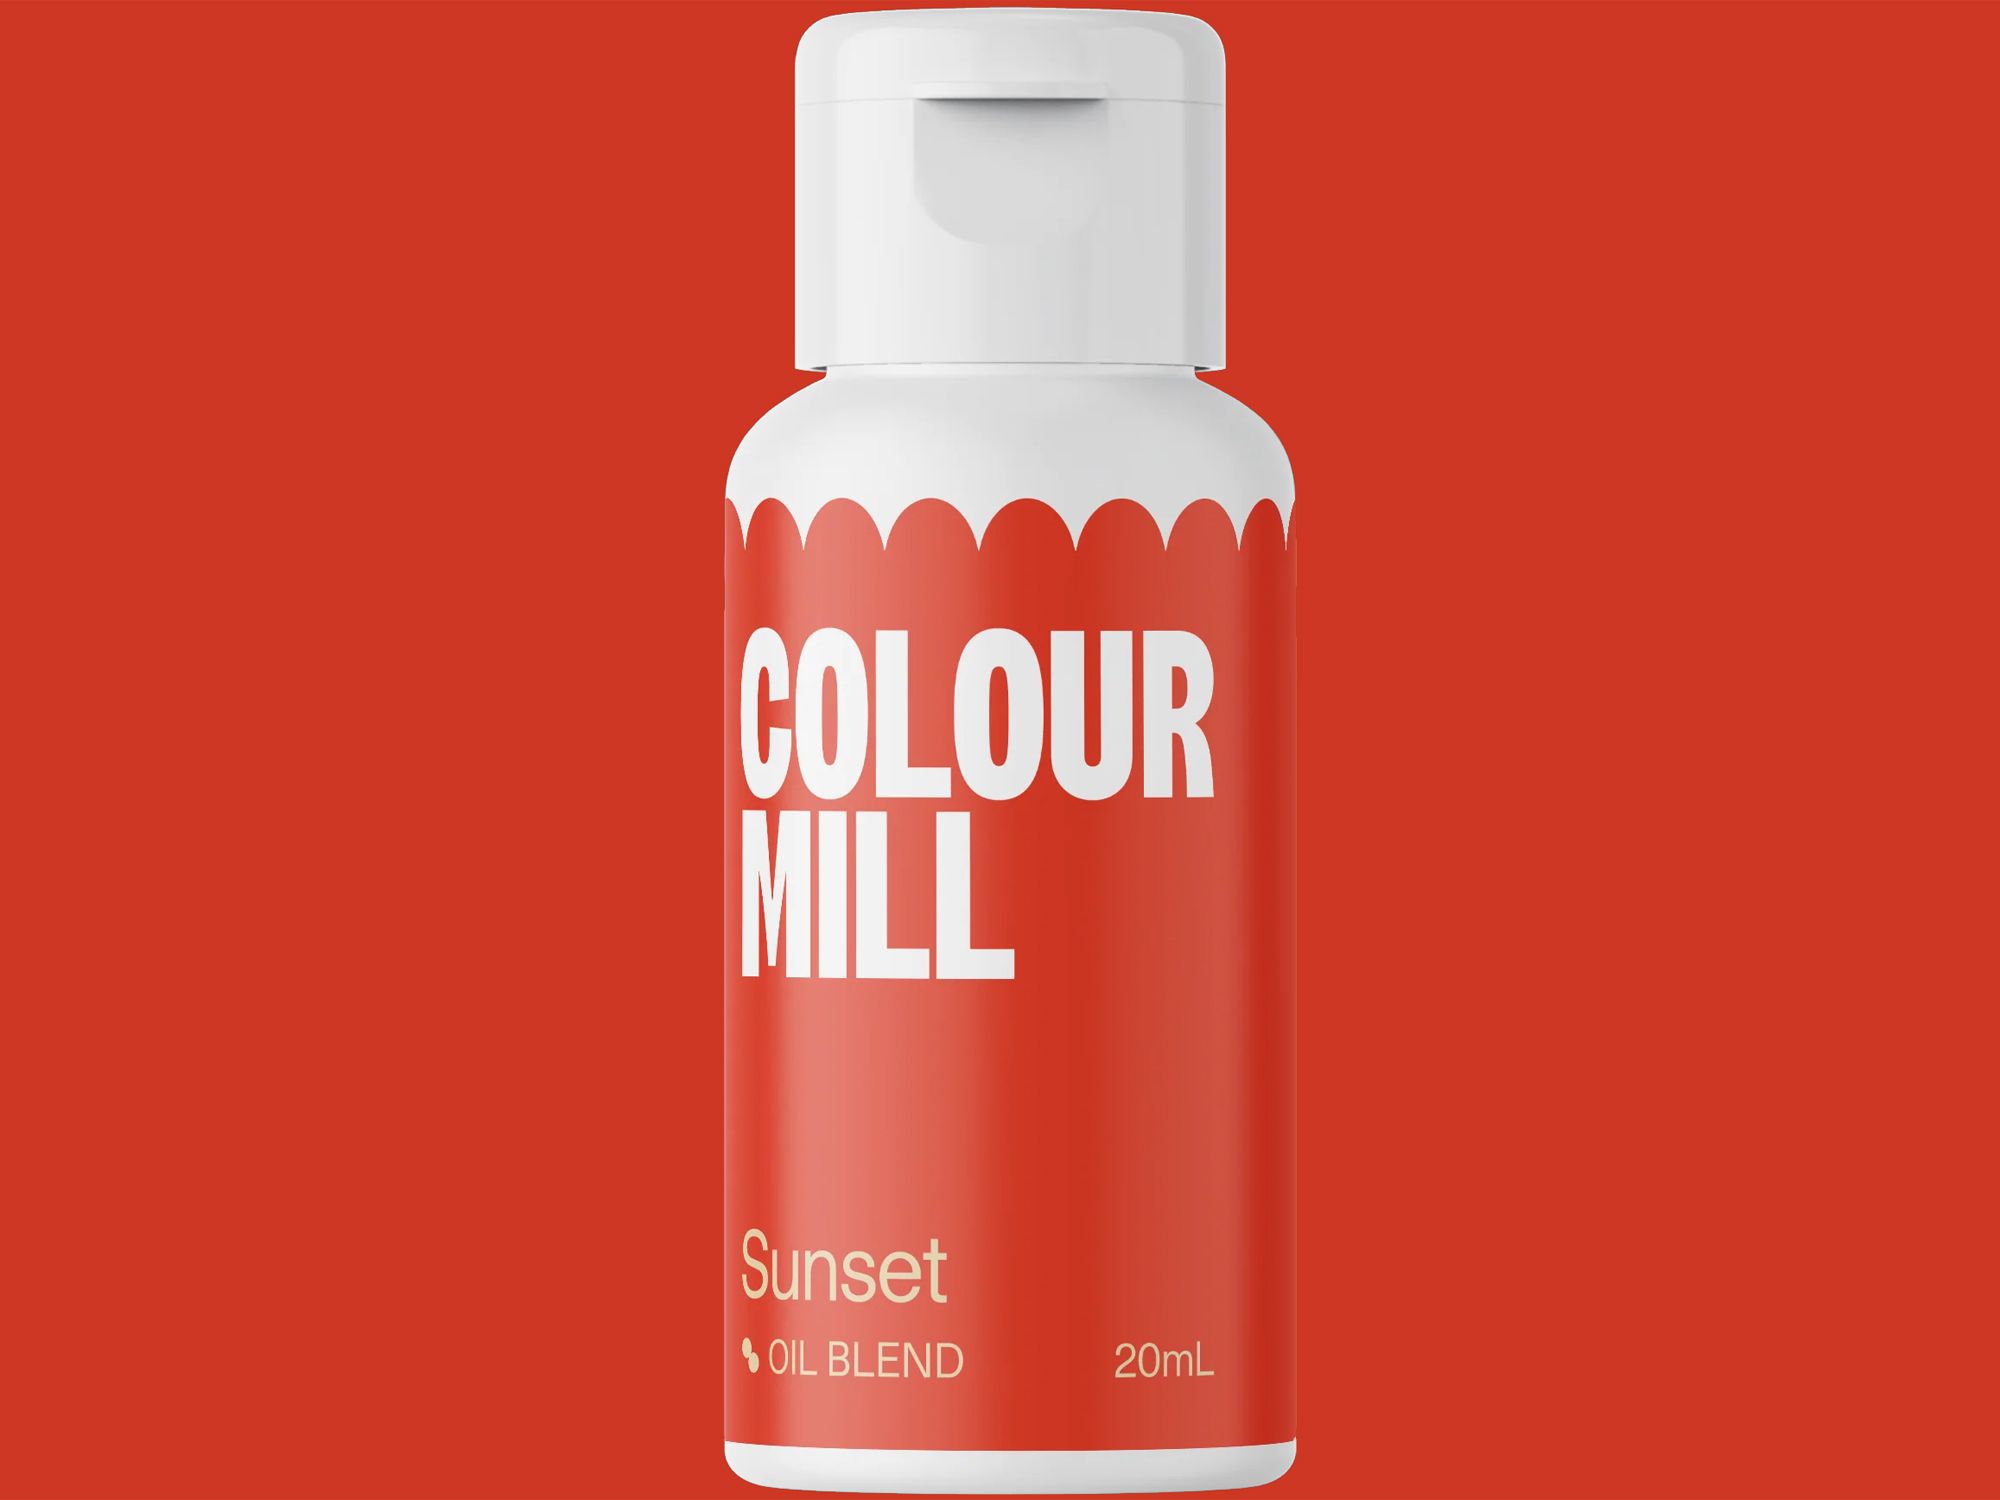 Colour Mill Sunset (Oil Blend) 20ml